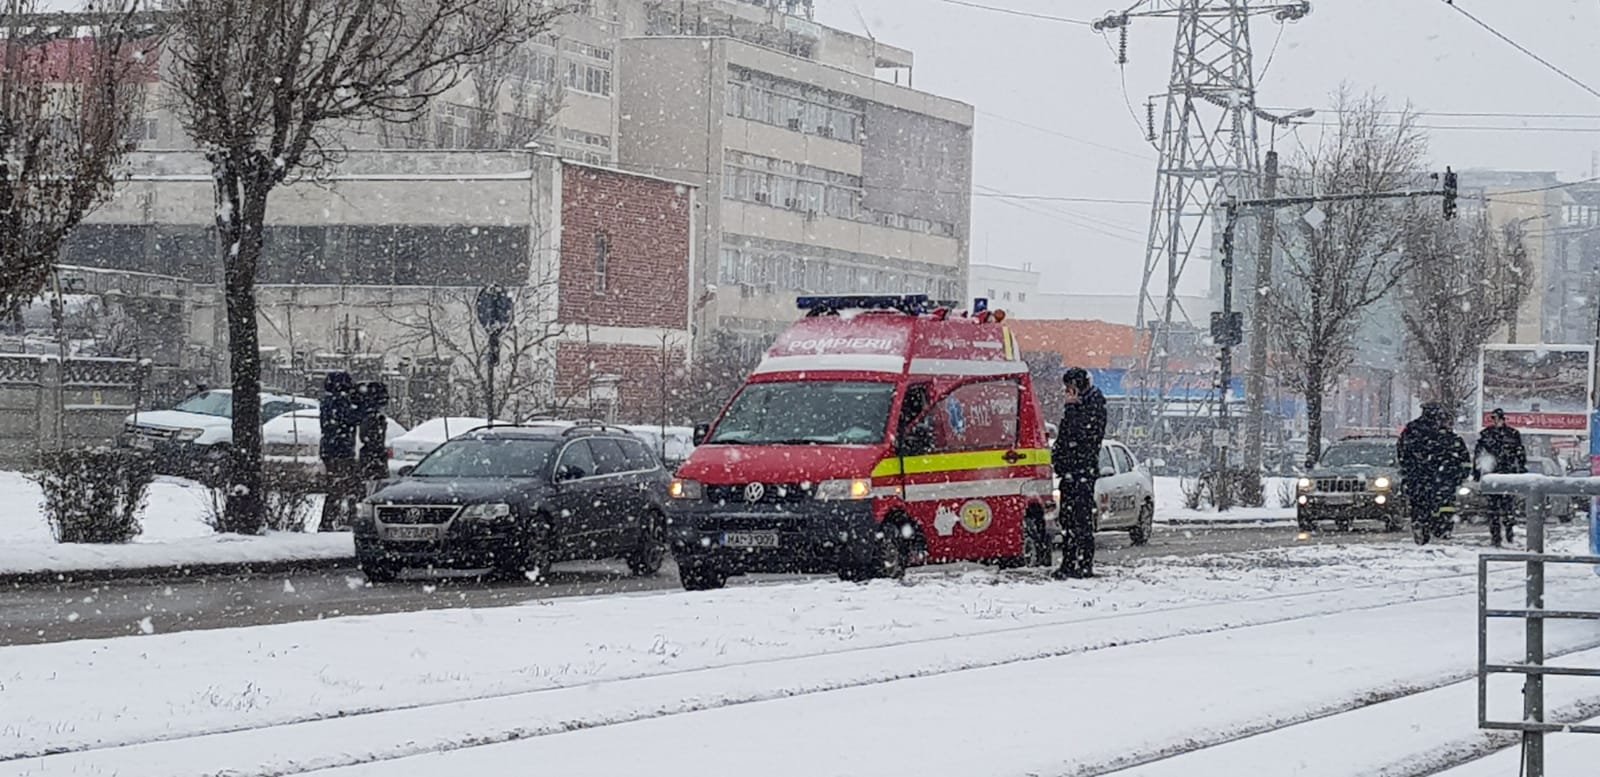  Femeie lovită pe trecerea de pietoni de ambulanţa SMURD cu sirena aflată în funcţiune